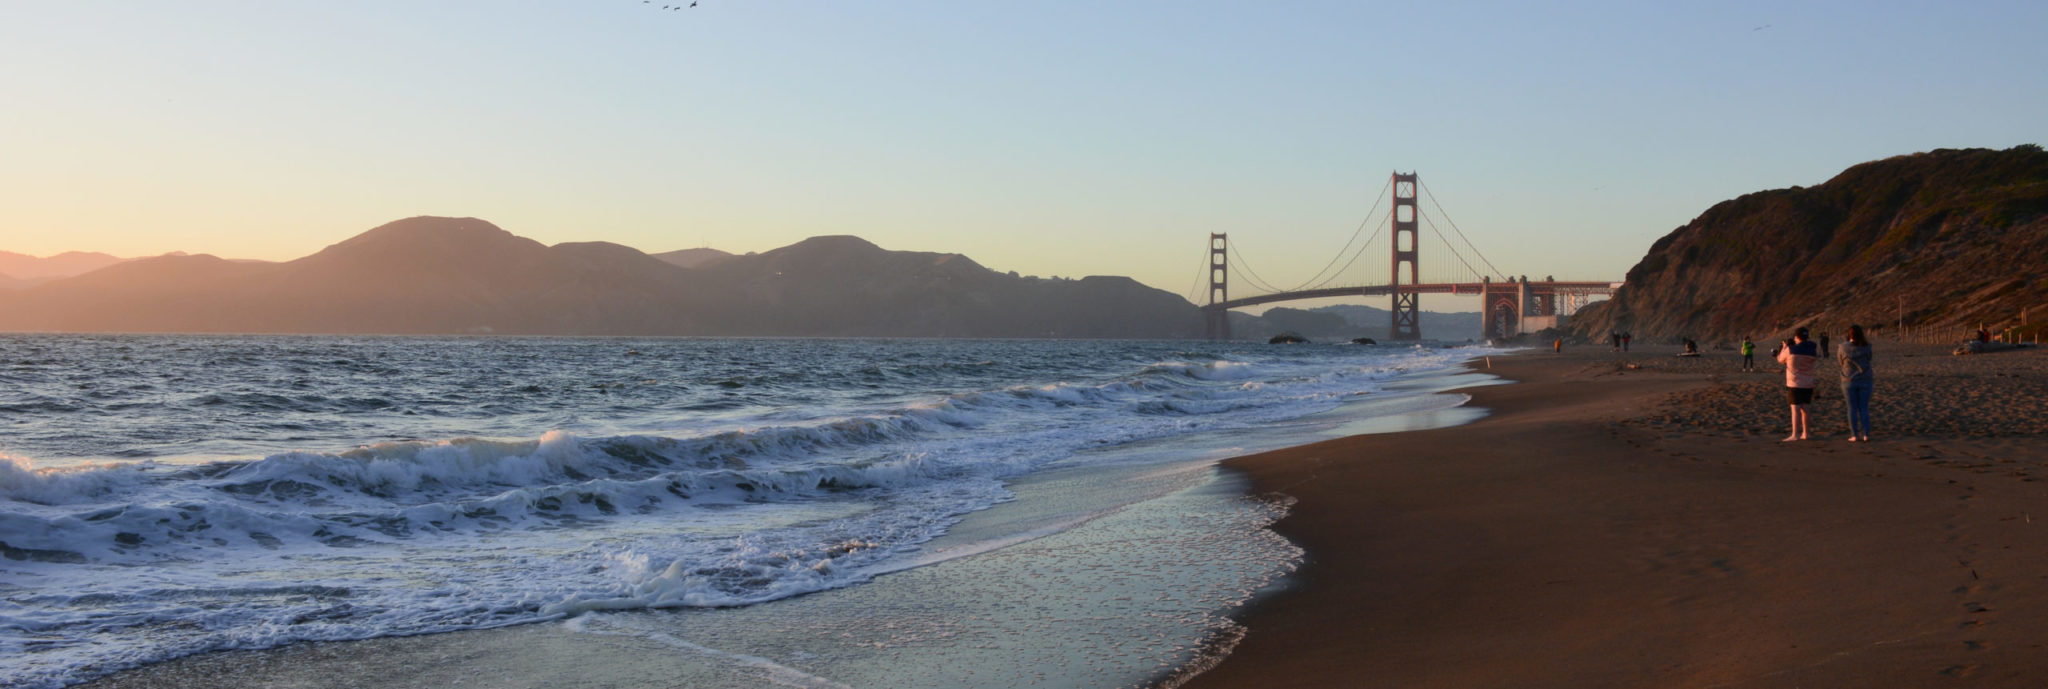 Plage de San Francisco avec vue sur le Golden Gate Bridge